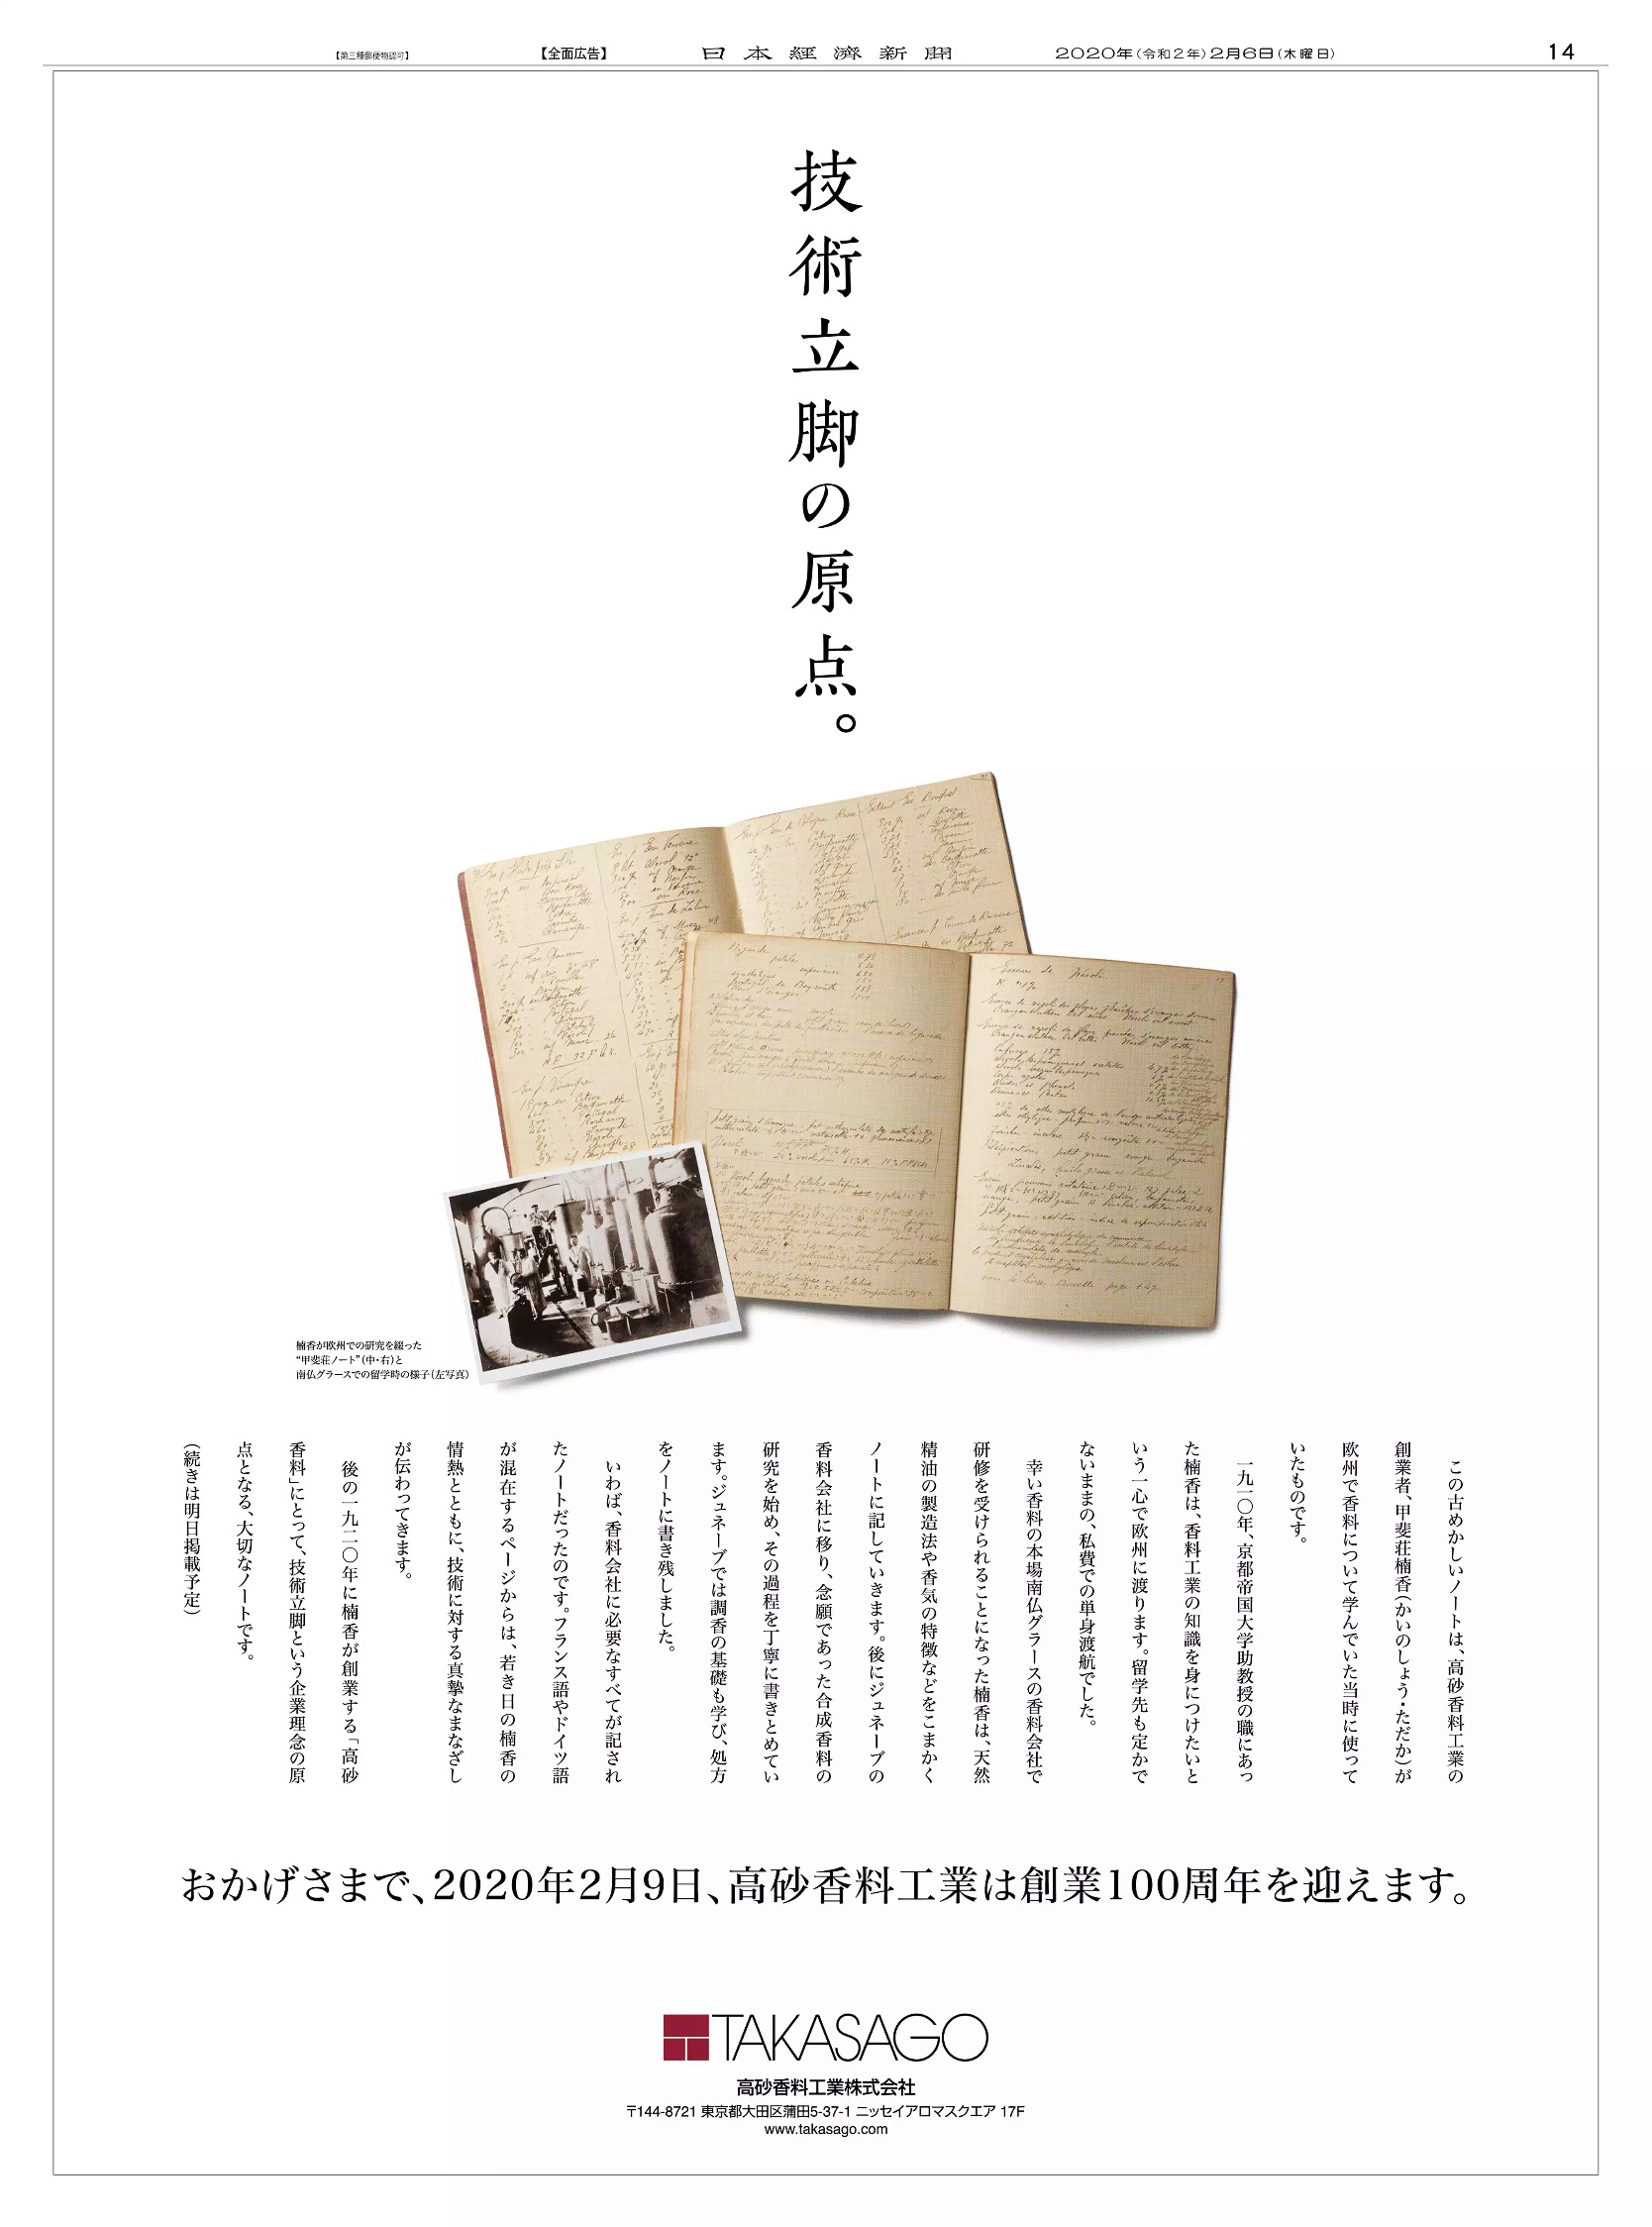 周年記念広告事例 「高砂香料工業 創業100周年」